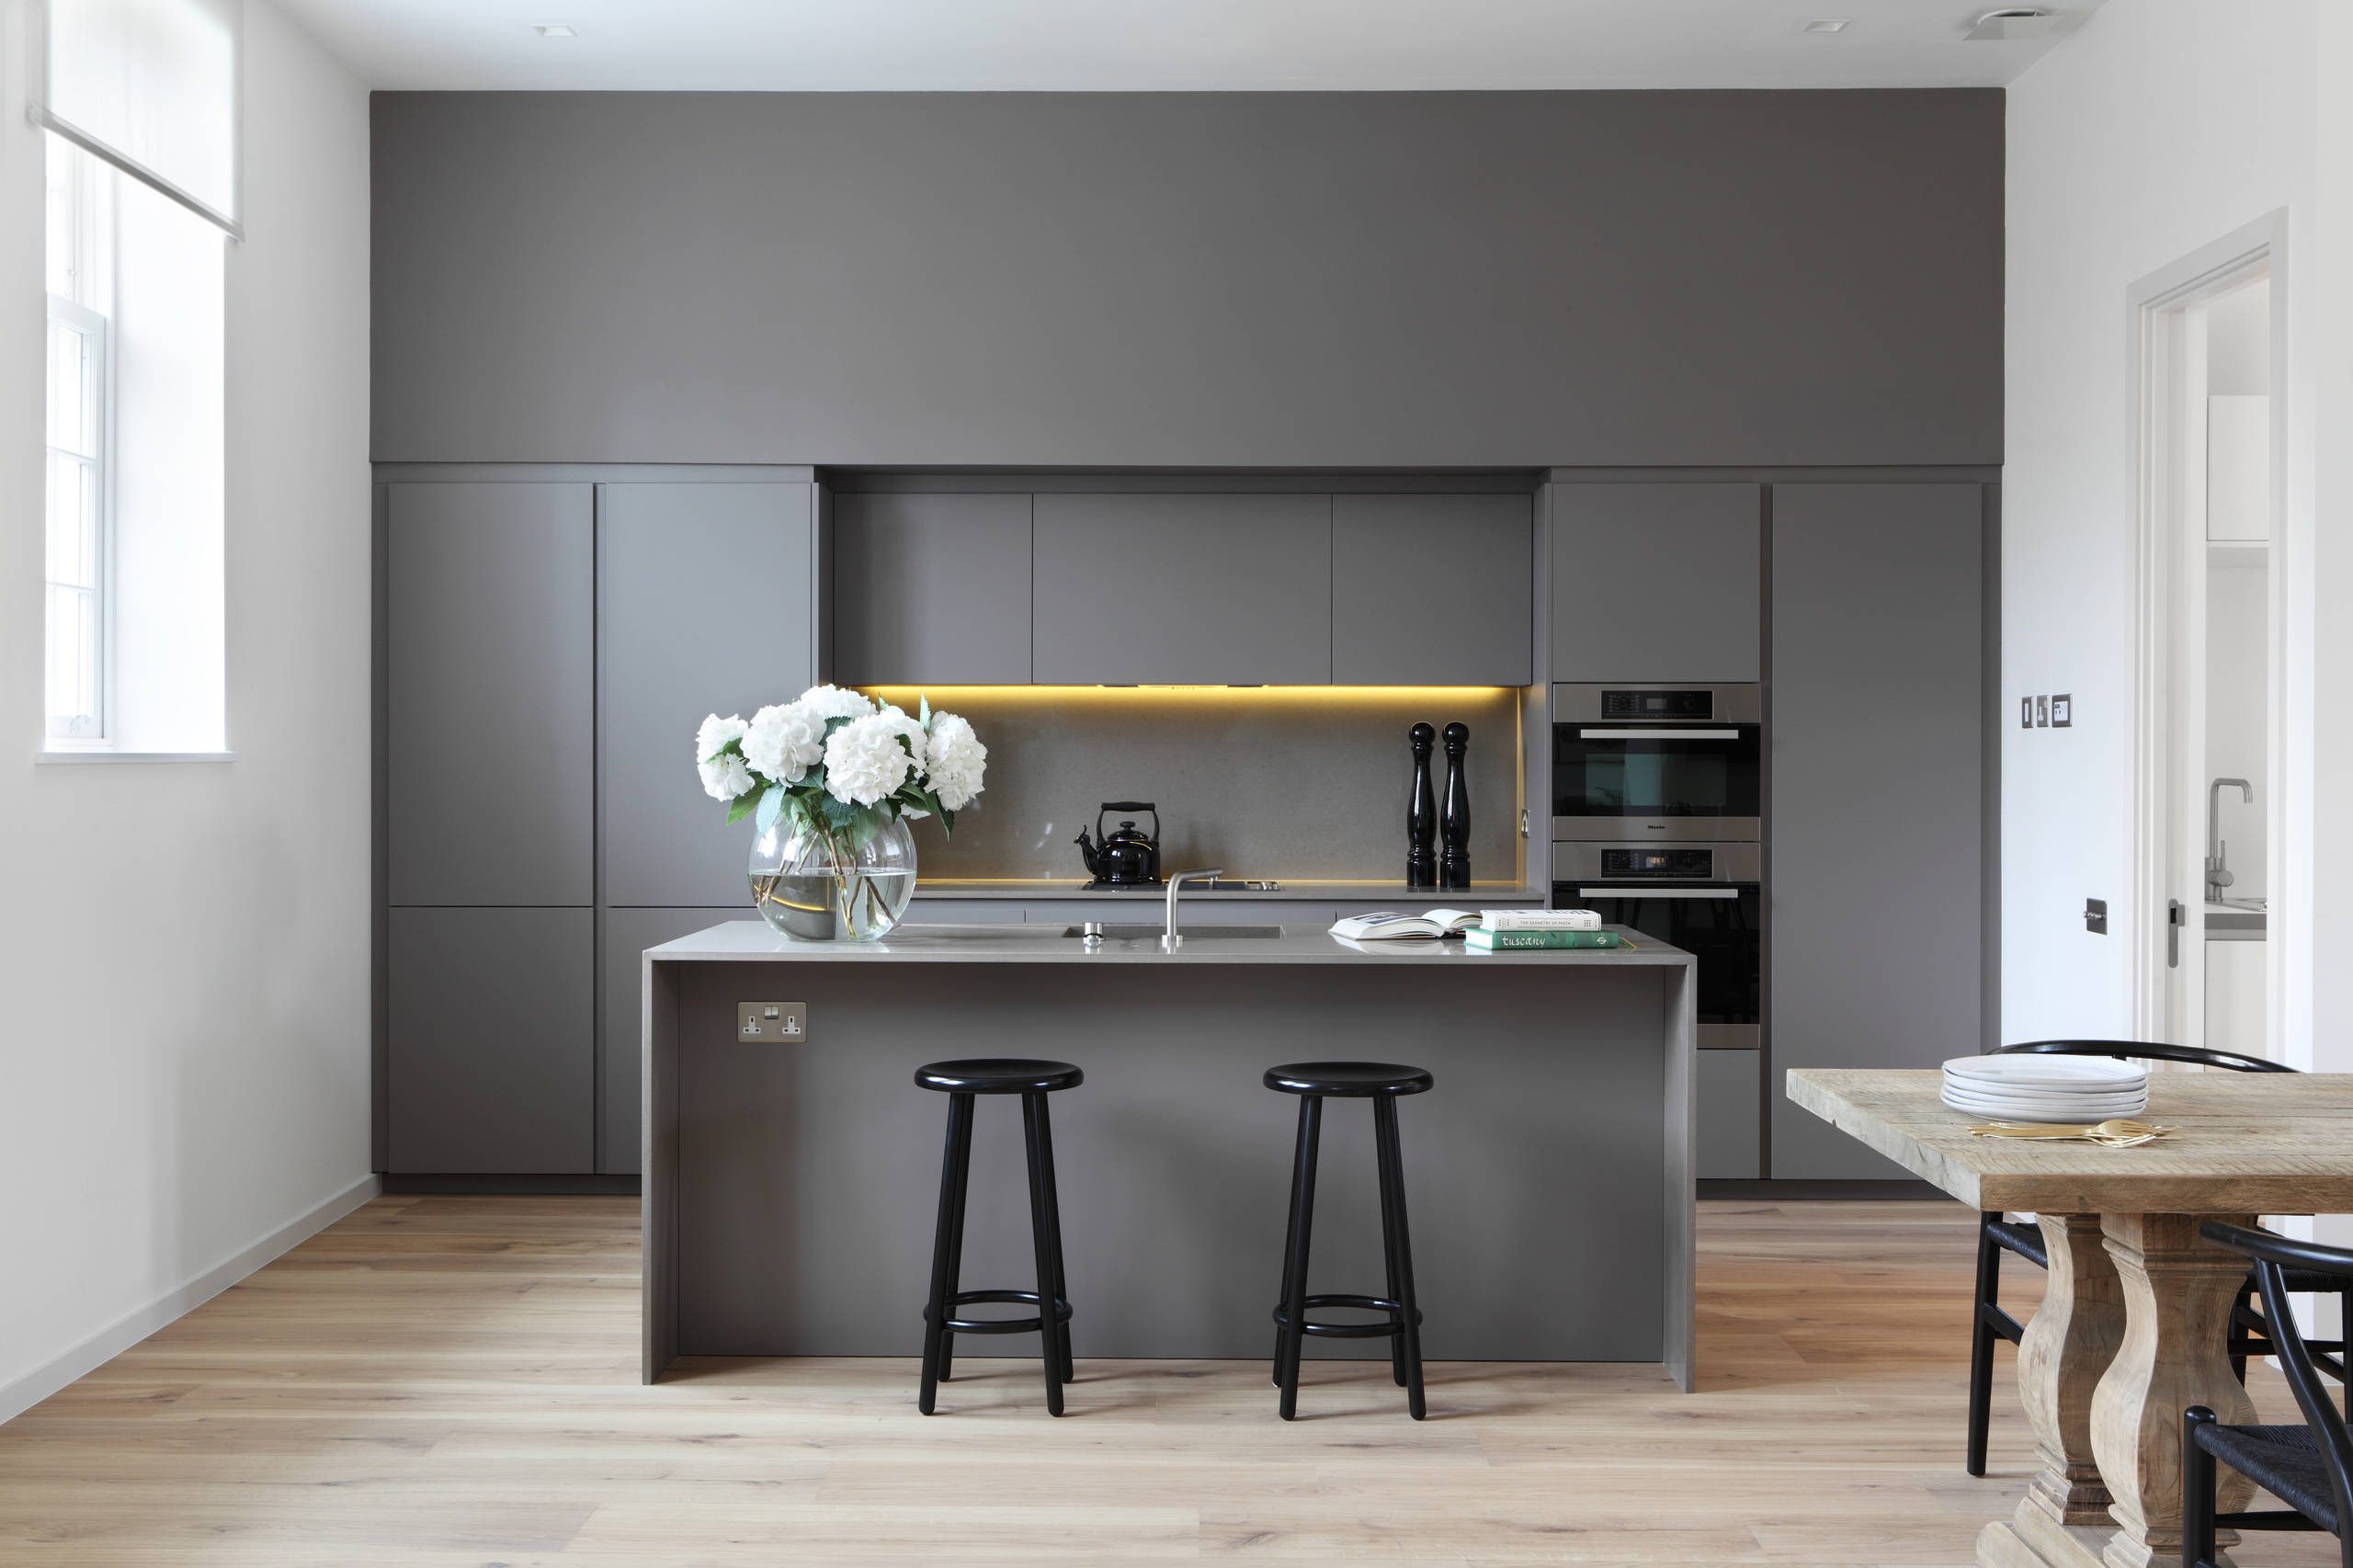 Дизайн кухни в стиле минимализм: отделка, мебель, освещение и декор